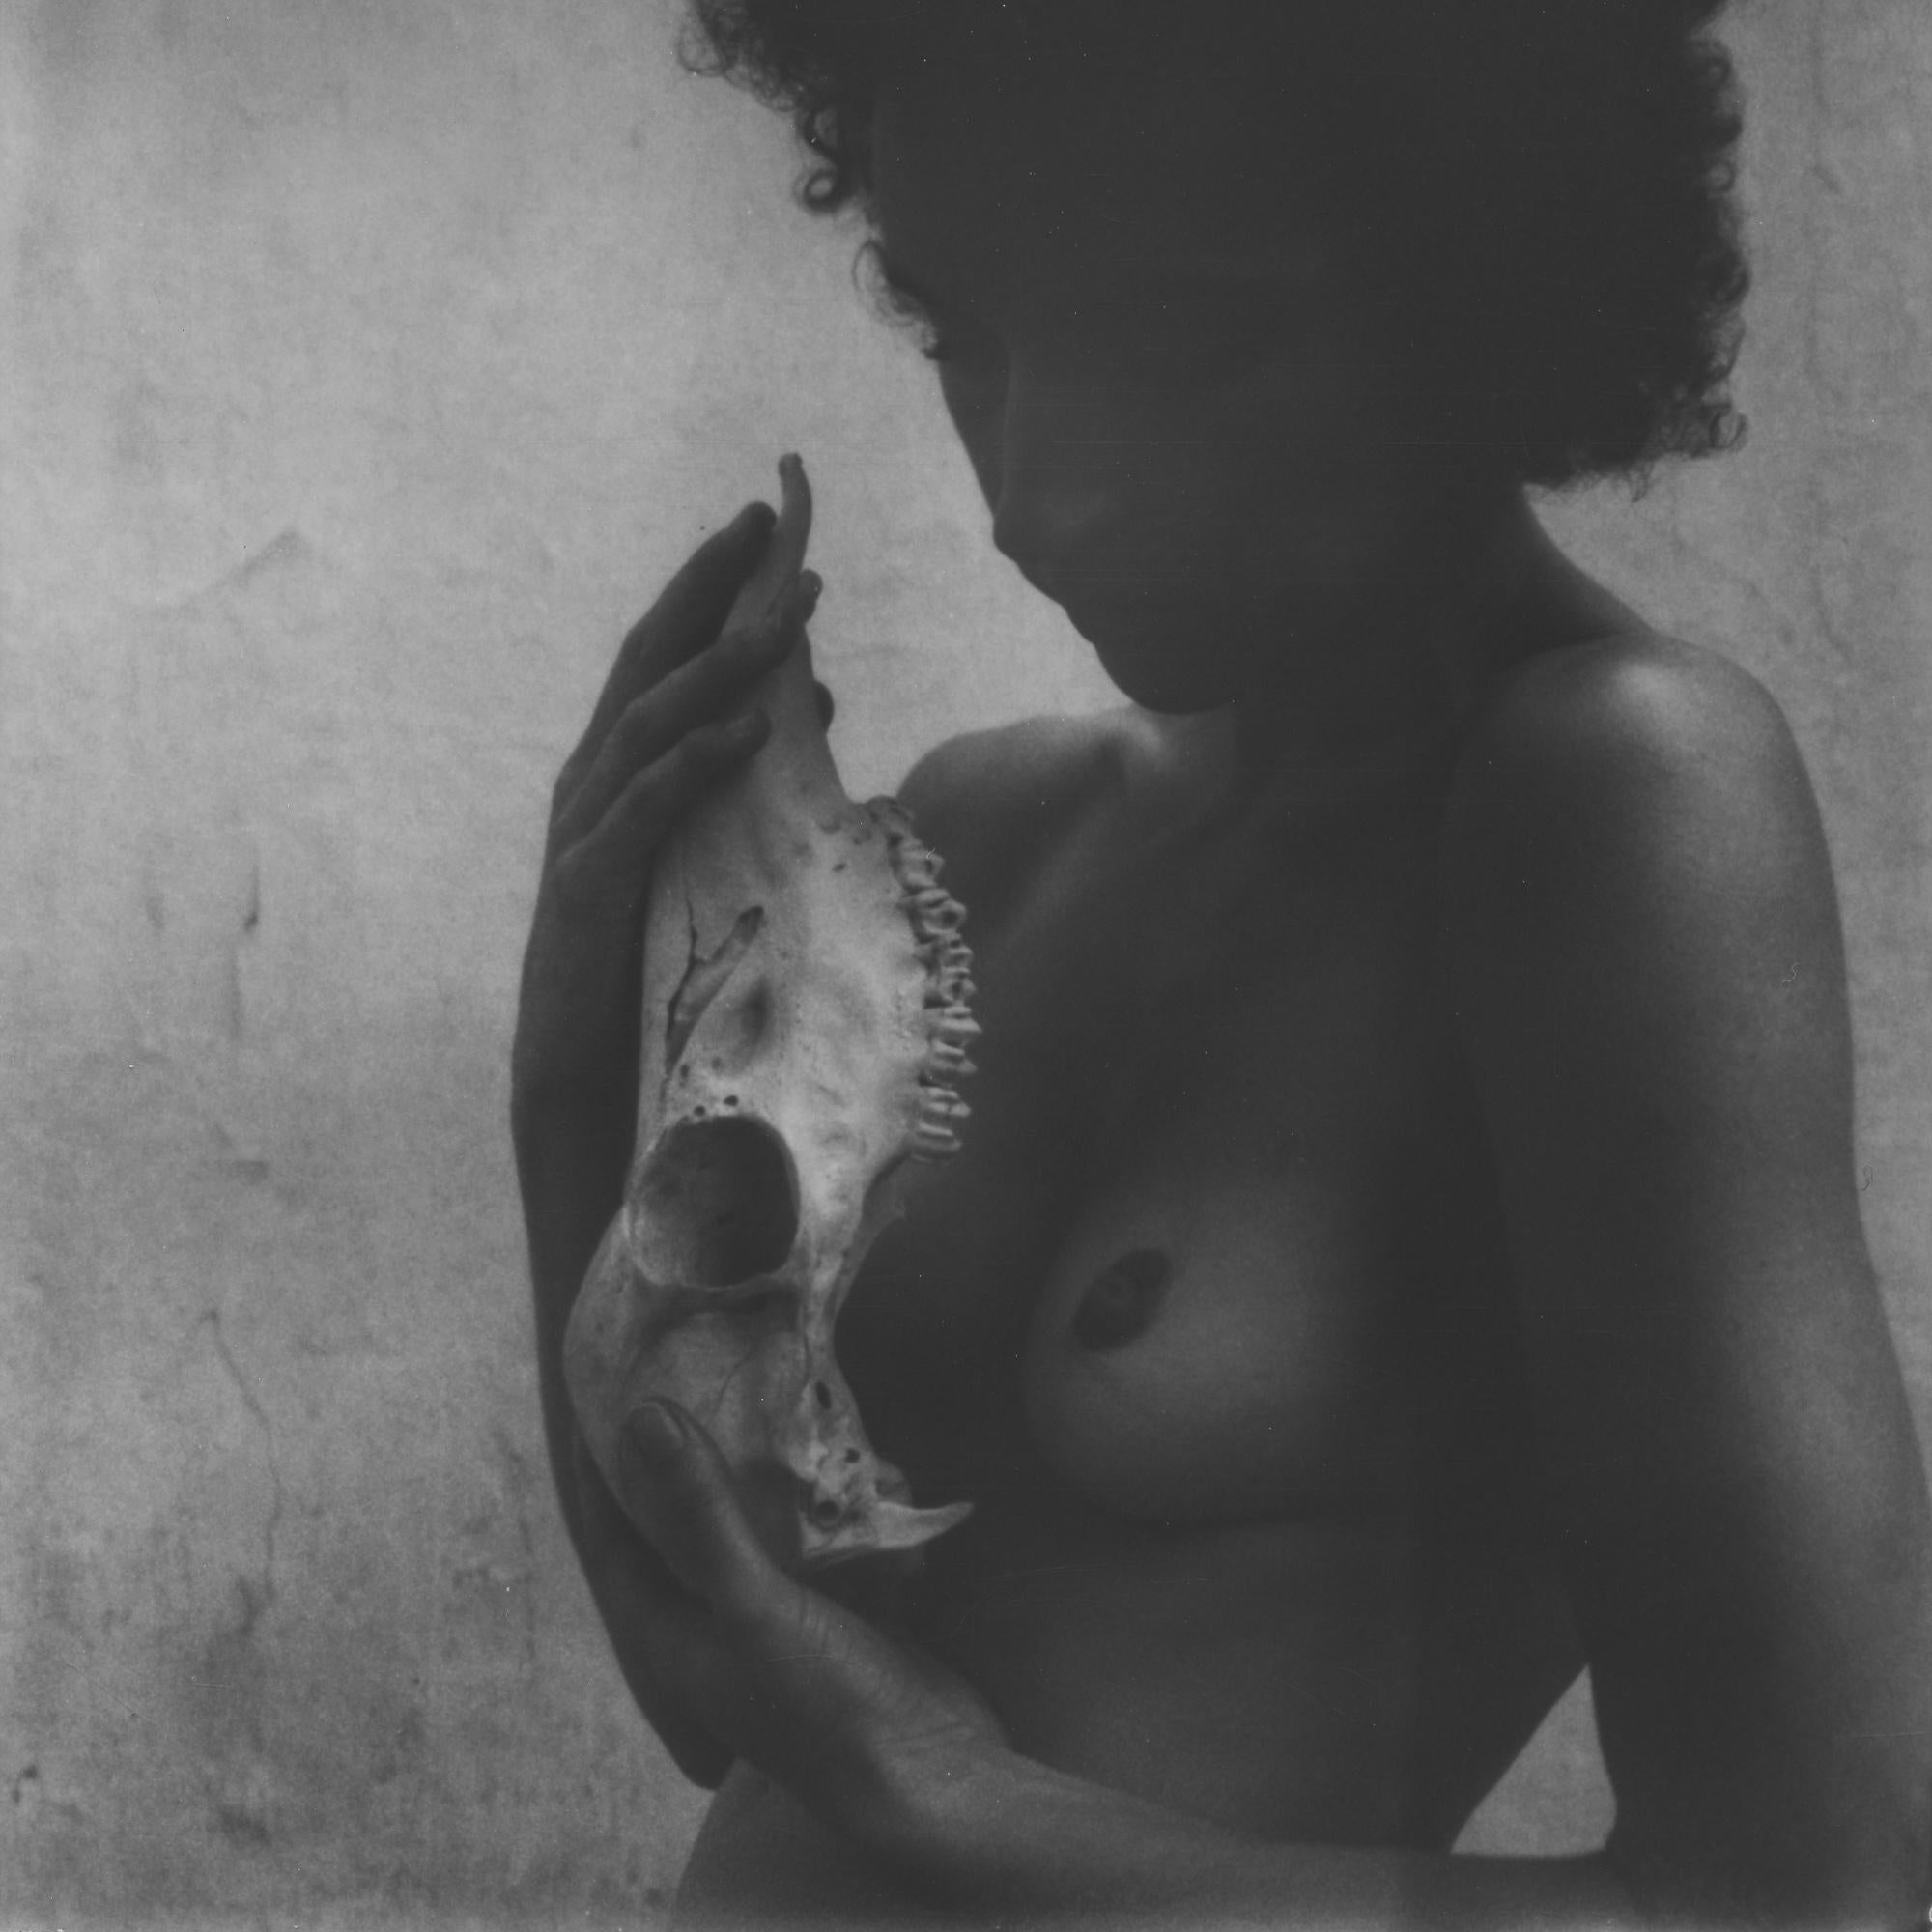 Haut und Knochen III - 21. Jahrhundert, Polaroid, Aktfotografie, Contemporary, Schwarzweiß